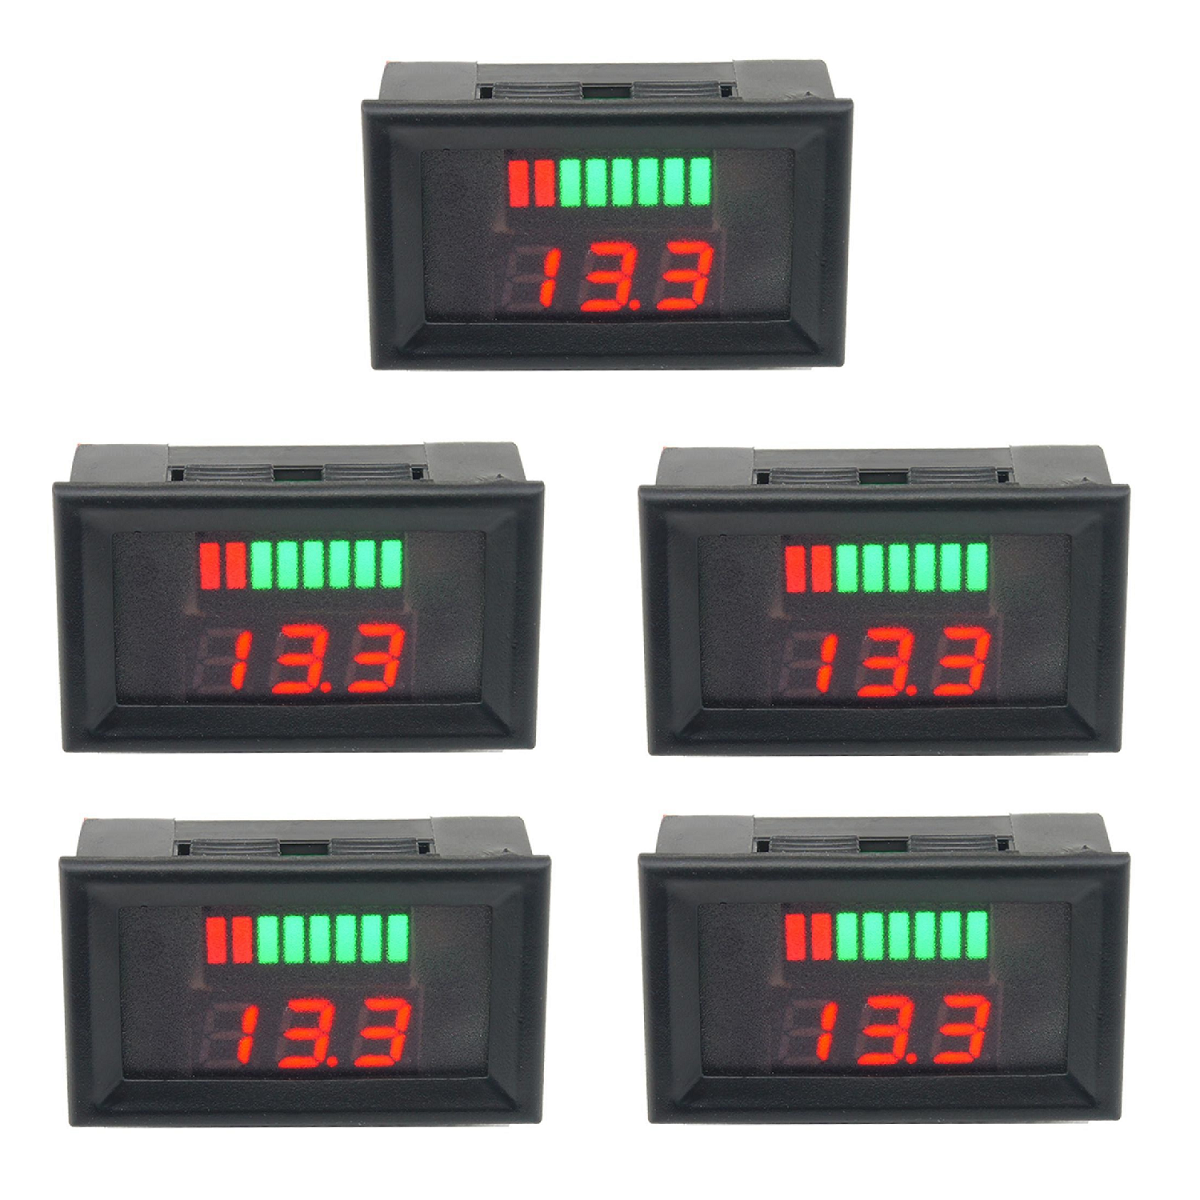 

5Pcs 12-60V Digital Voltmeter Tester DC Panel Voltage Current Meter Tester Lead Acid Battery Capacity LED Indicator Disp